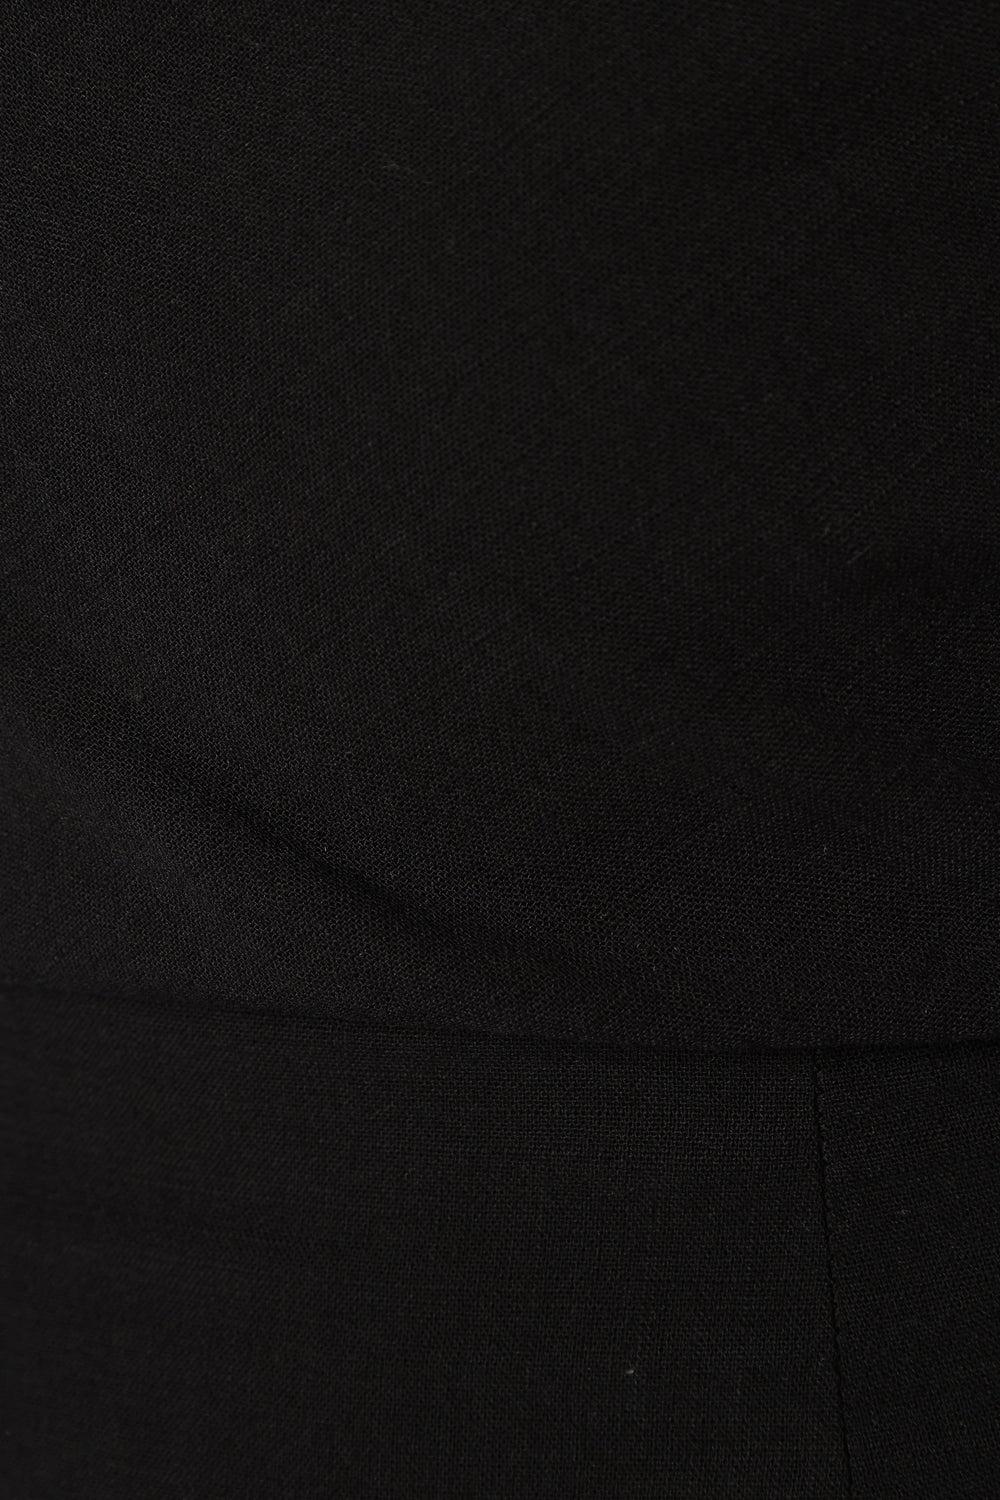 DRESSES @Cosma Off Shoulder Maxi Linen Dress - Black